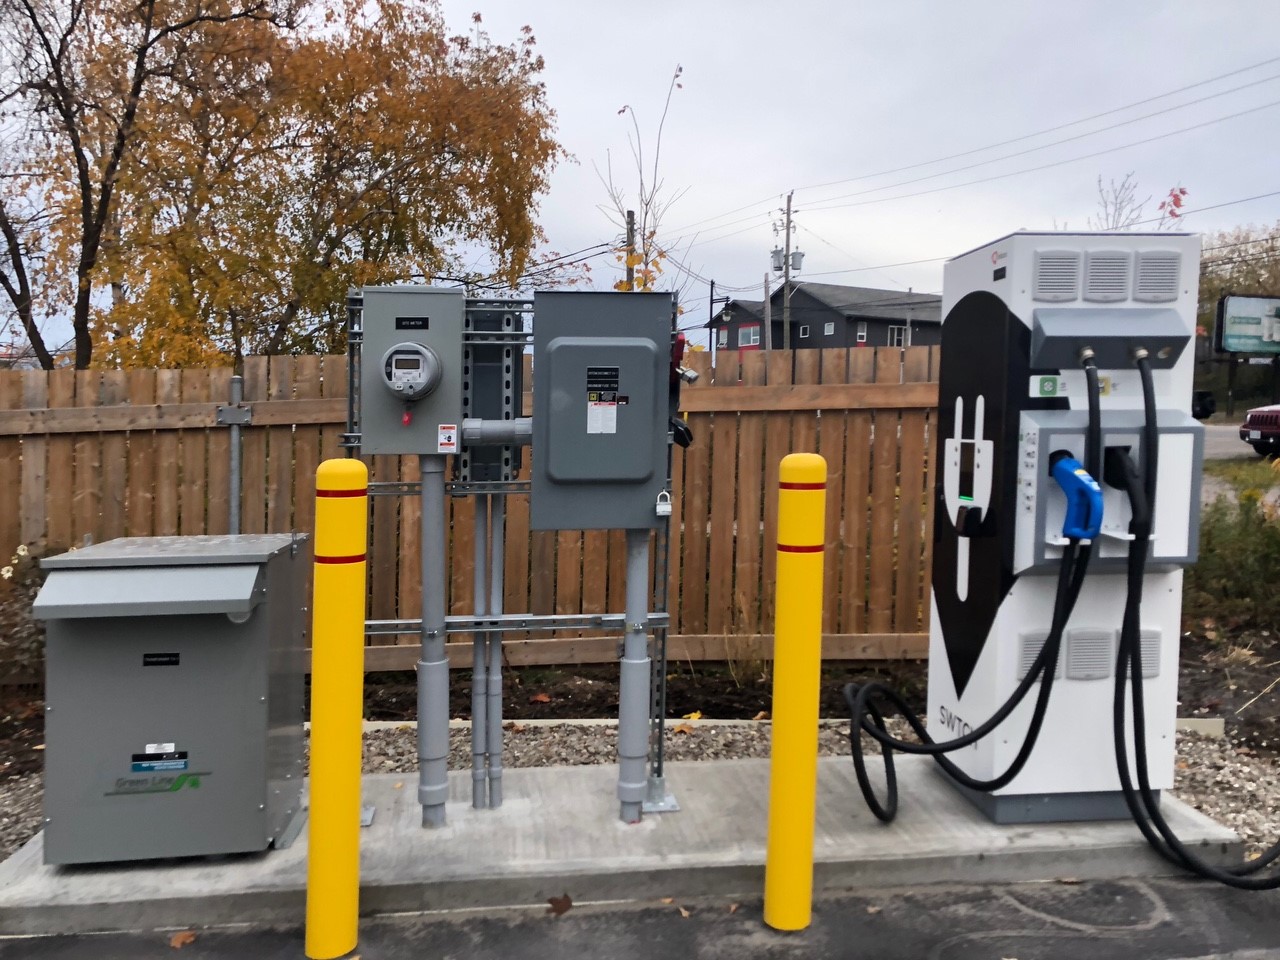 Station de recharge pour véhicules électriques située dans un terrain de stationnement devant une clôture.